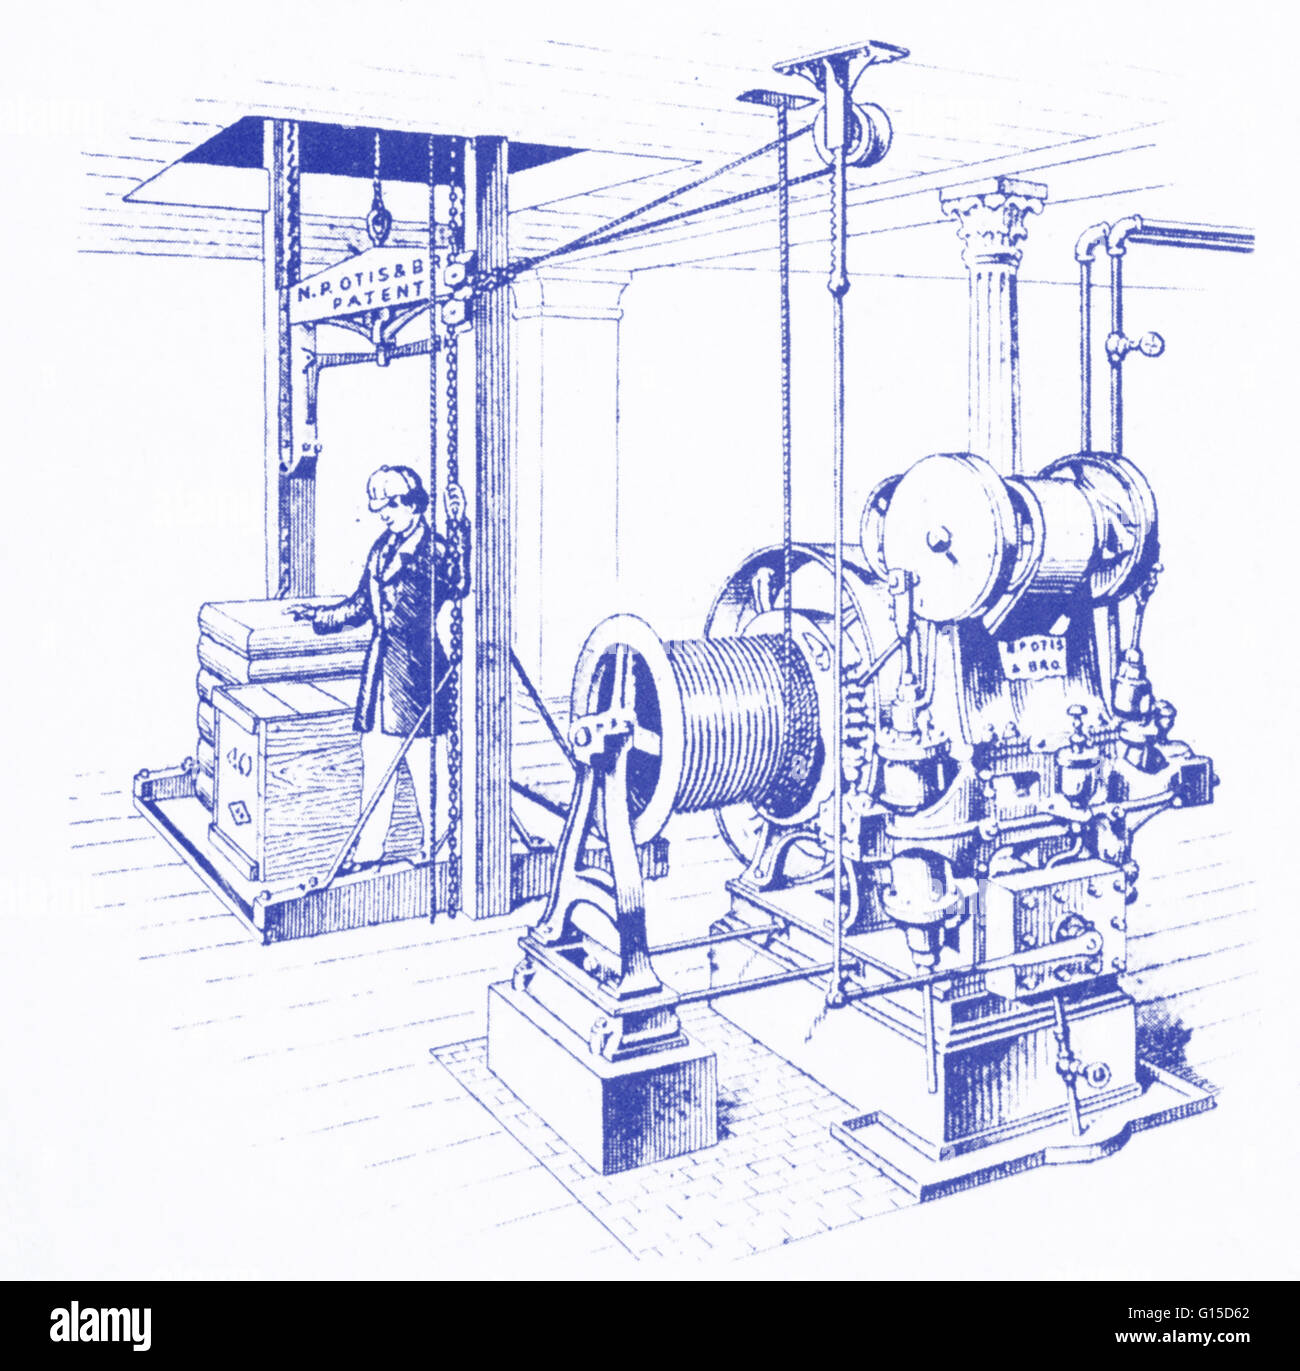 Una illustrazione di una doppia oscillante motore a vapore, creato da Elisha Graves Otis (1811-1861) come un "power plant' esclusivamente per ascensori. Otis, un americano, ha inventato un dispositivo di sicurezza che impediva di ascensori di cadere se il cavo di sollevamento rotto. Foto Stock